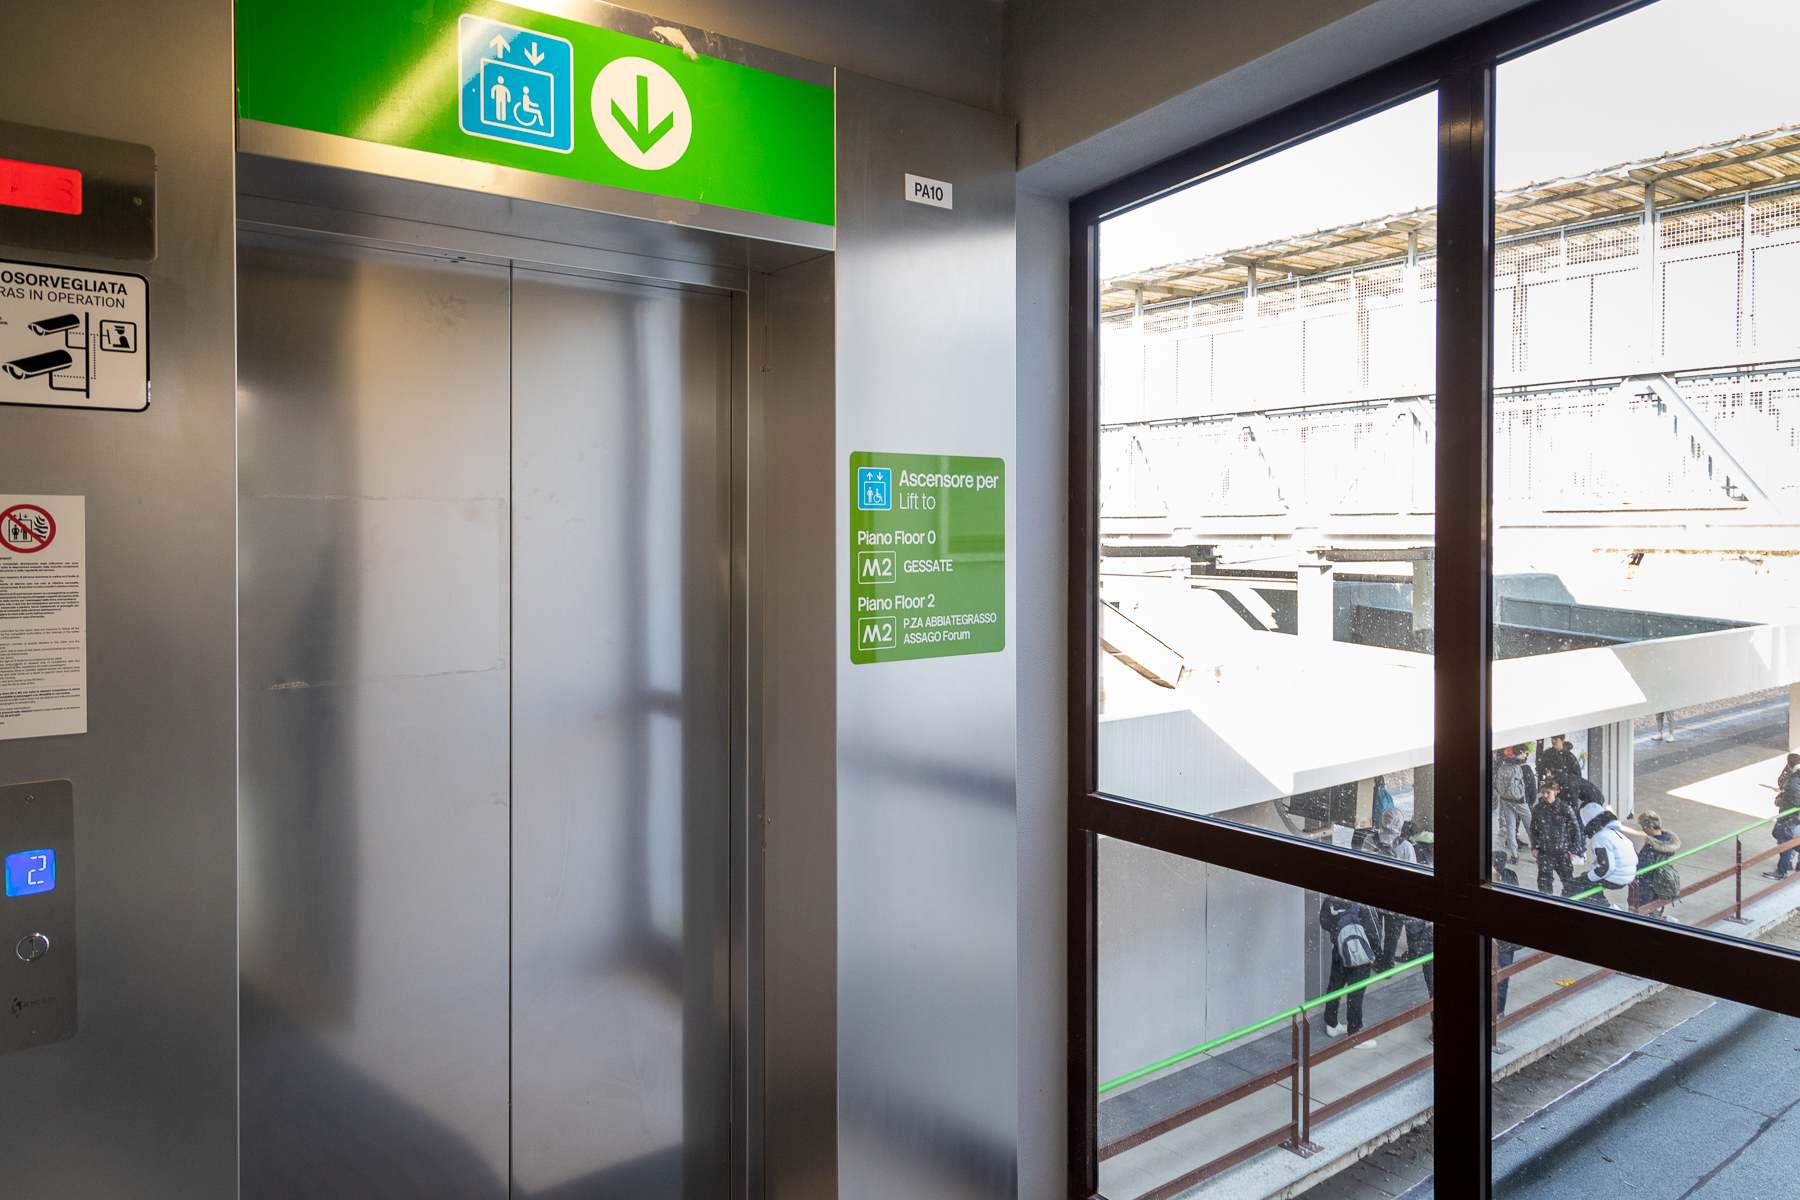 Installati 15 nuovi ascensori: sei stazioni della Linea M2 sono accessibili